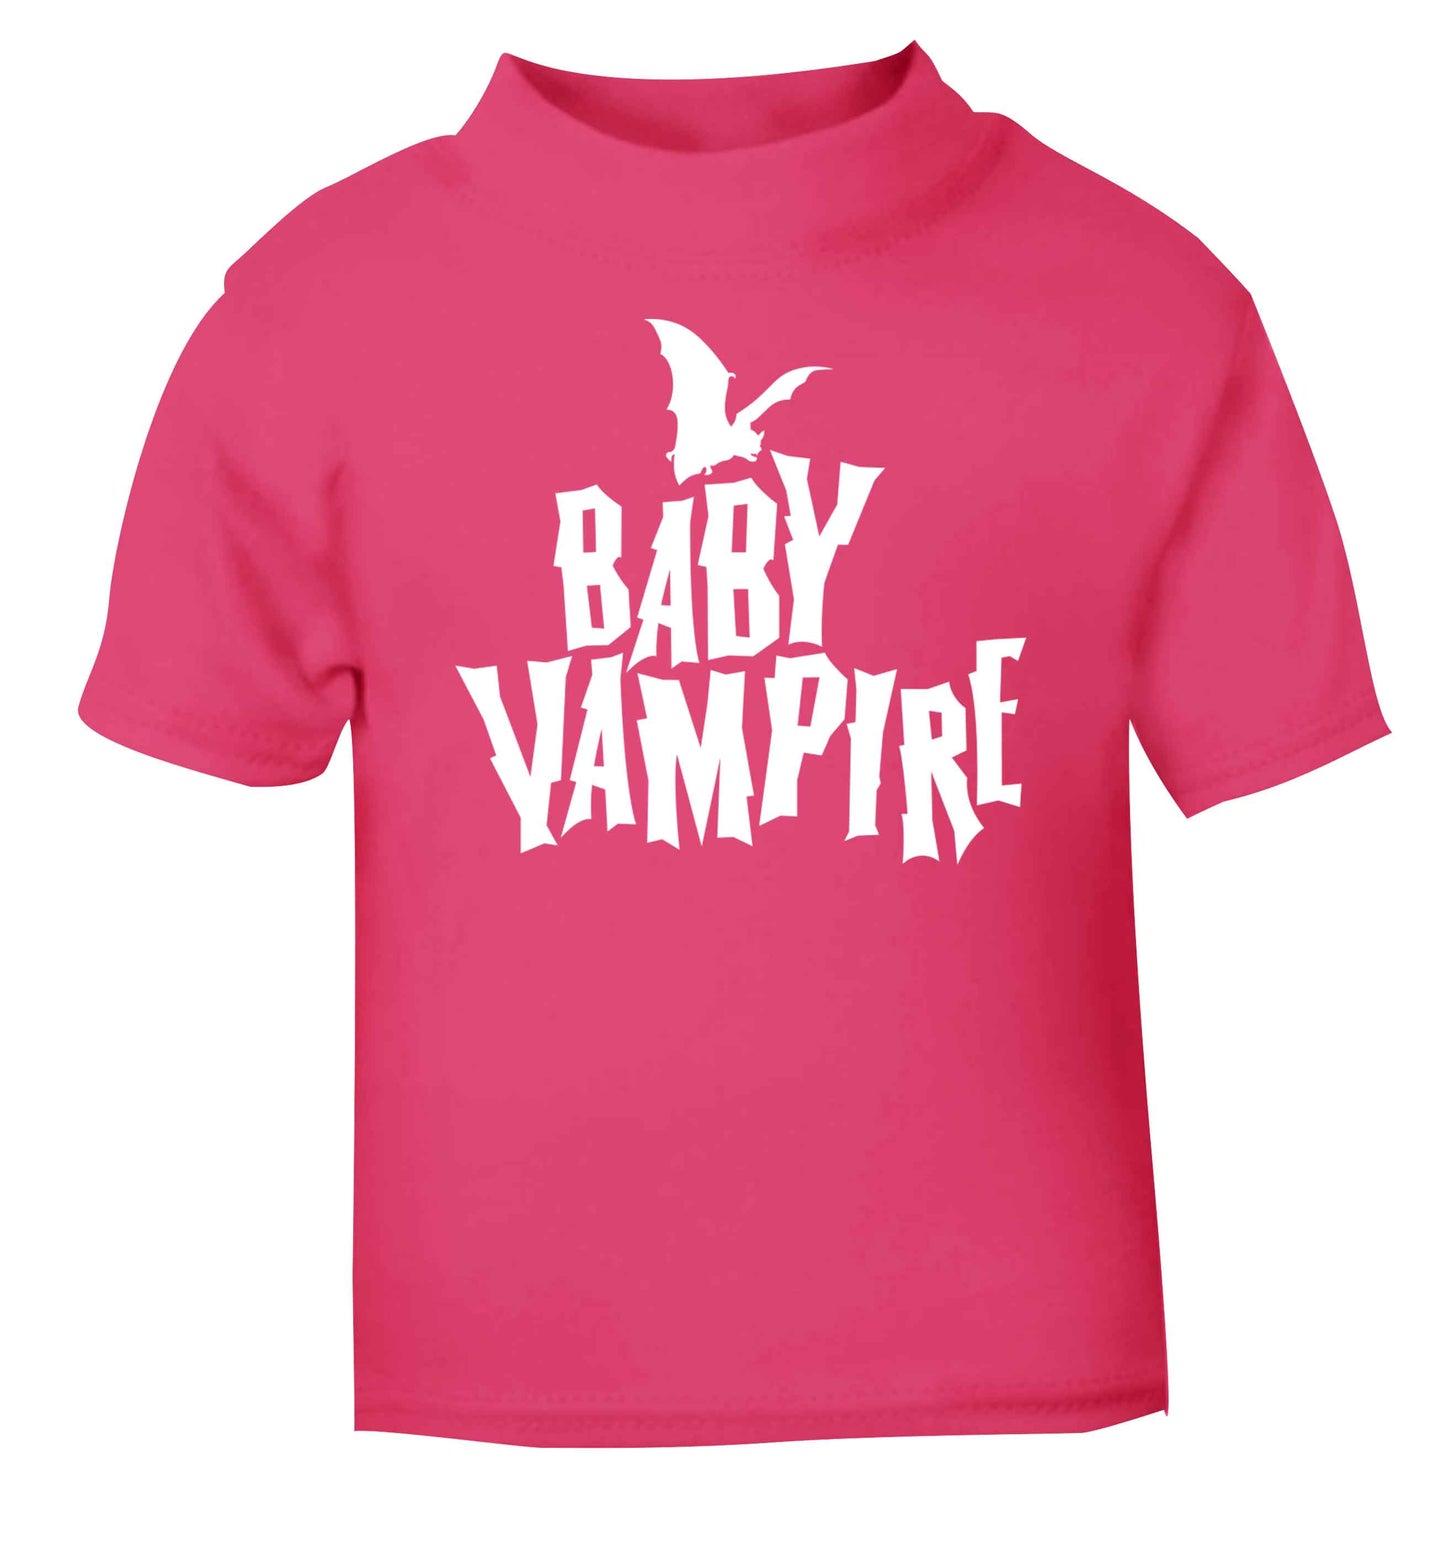 Baby vampire pink baby toddler Tshirt 2 Years